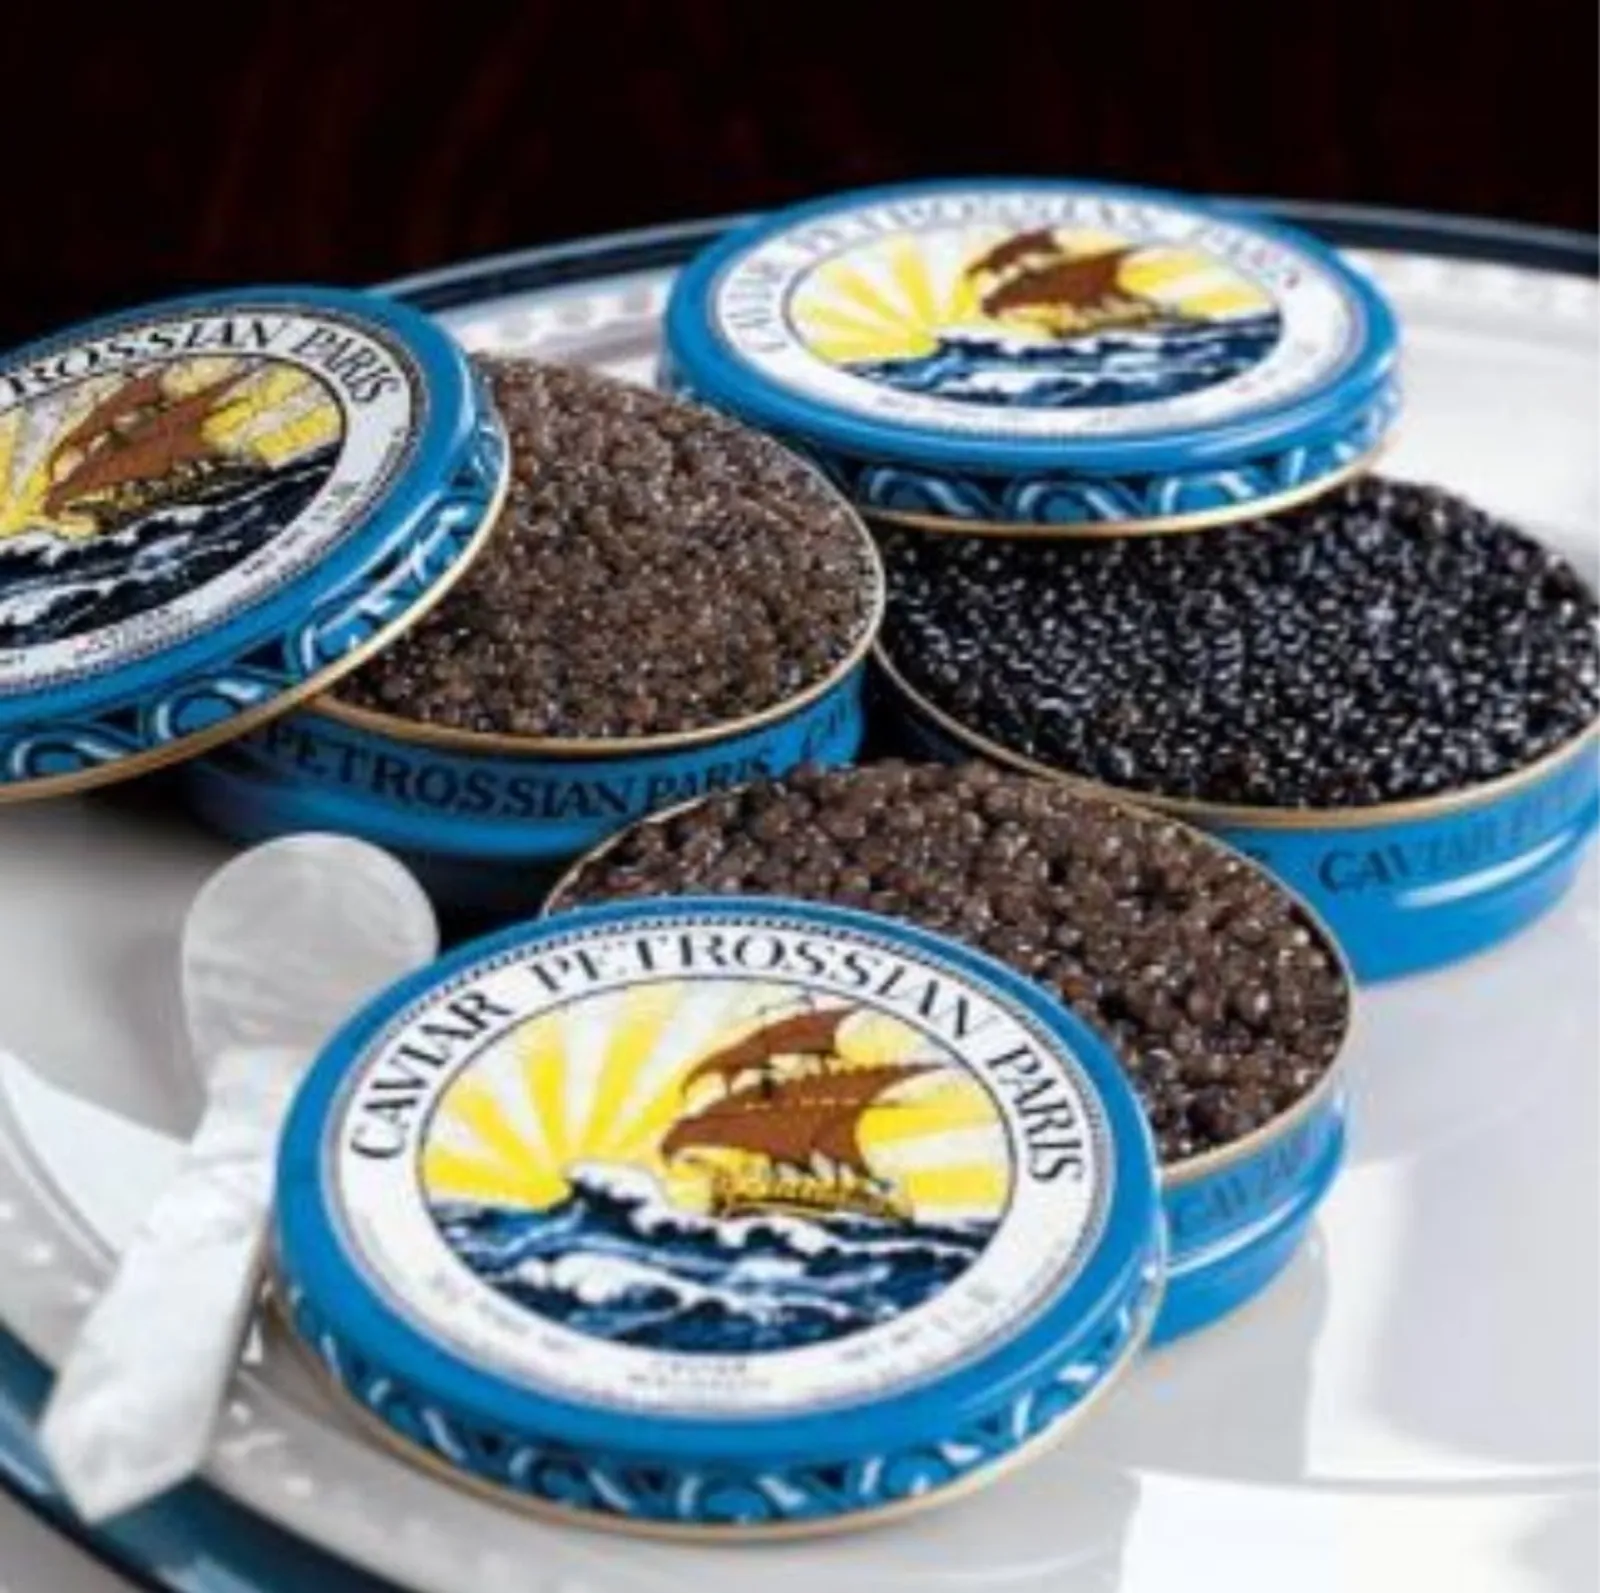 Apa Itu Caviar? Inilah Arti, Jenis, Harga, dan Manfaatnya